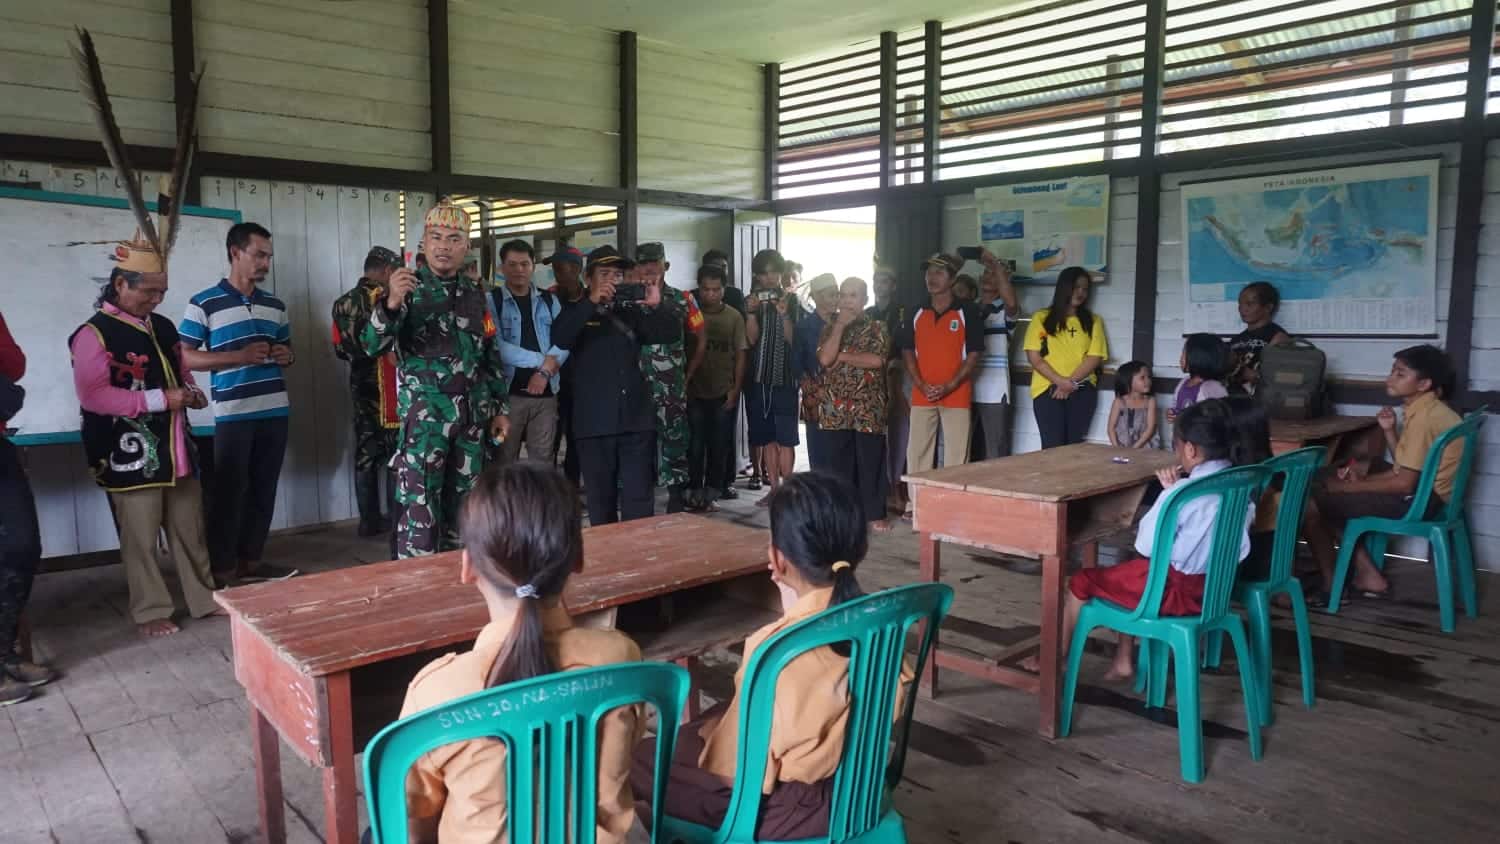 Dandim1206/Putussibau, Letkol Inf Sri Widodo berkunjung ke sebuah sekolah dasar di wilayah pedalaman di Dusun Nanga Salin, Desa Kareho, Kecamatan Putussibau Selatan. (Foto: Ishaq)